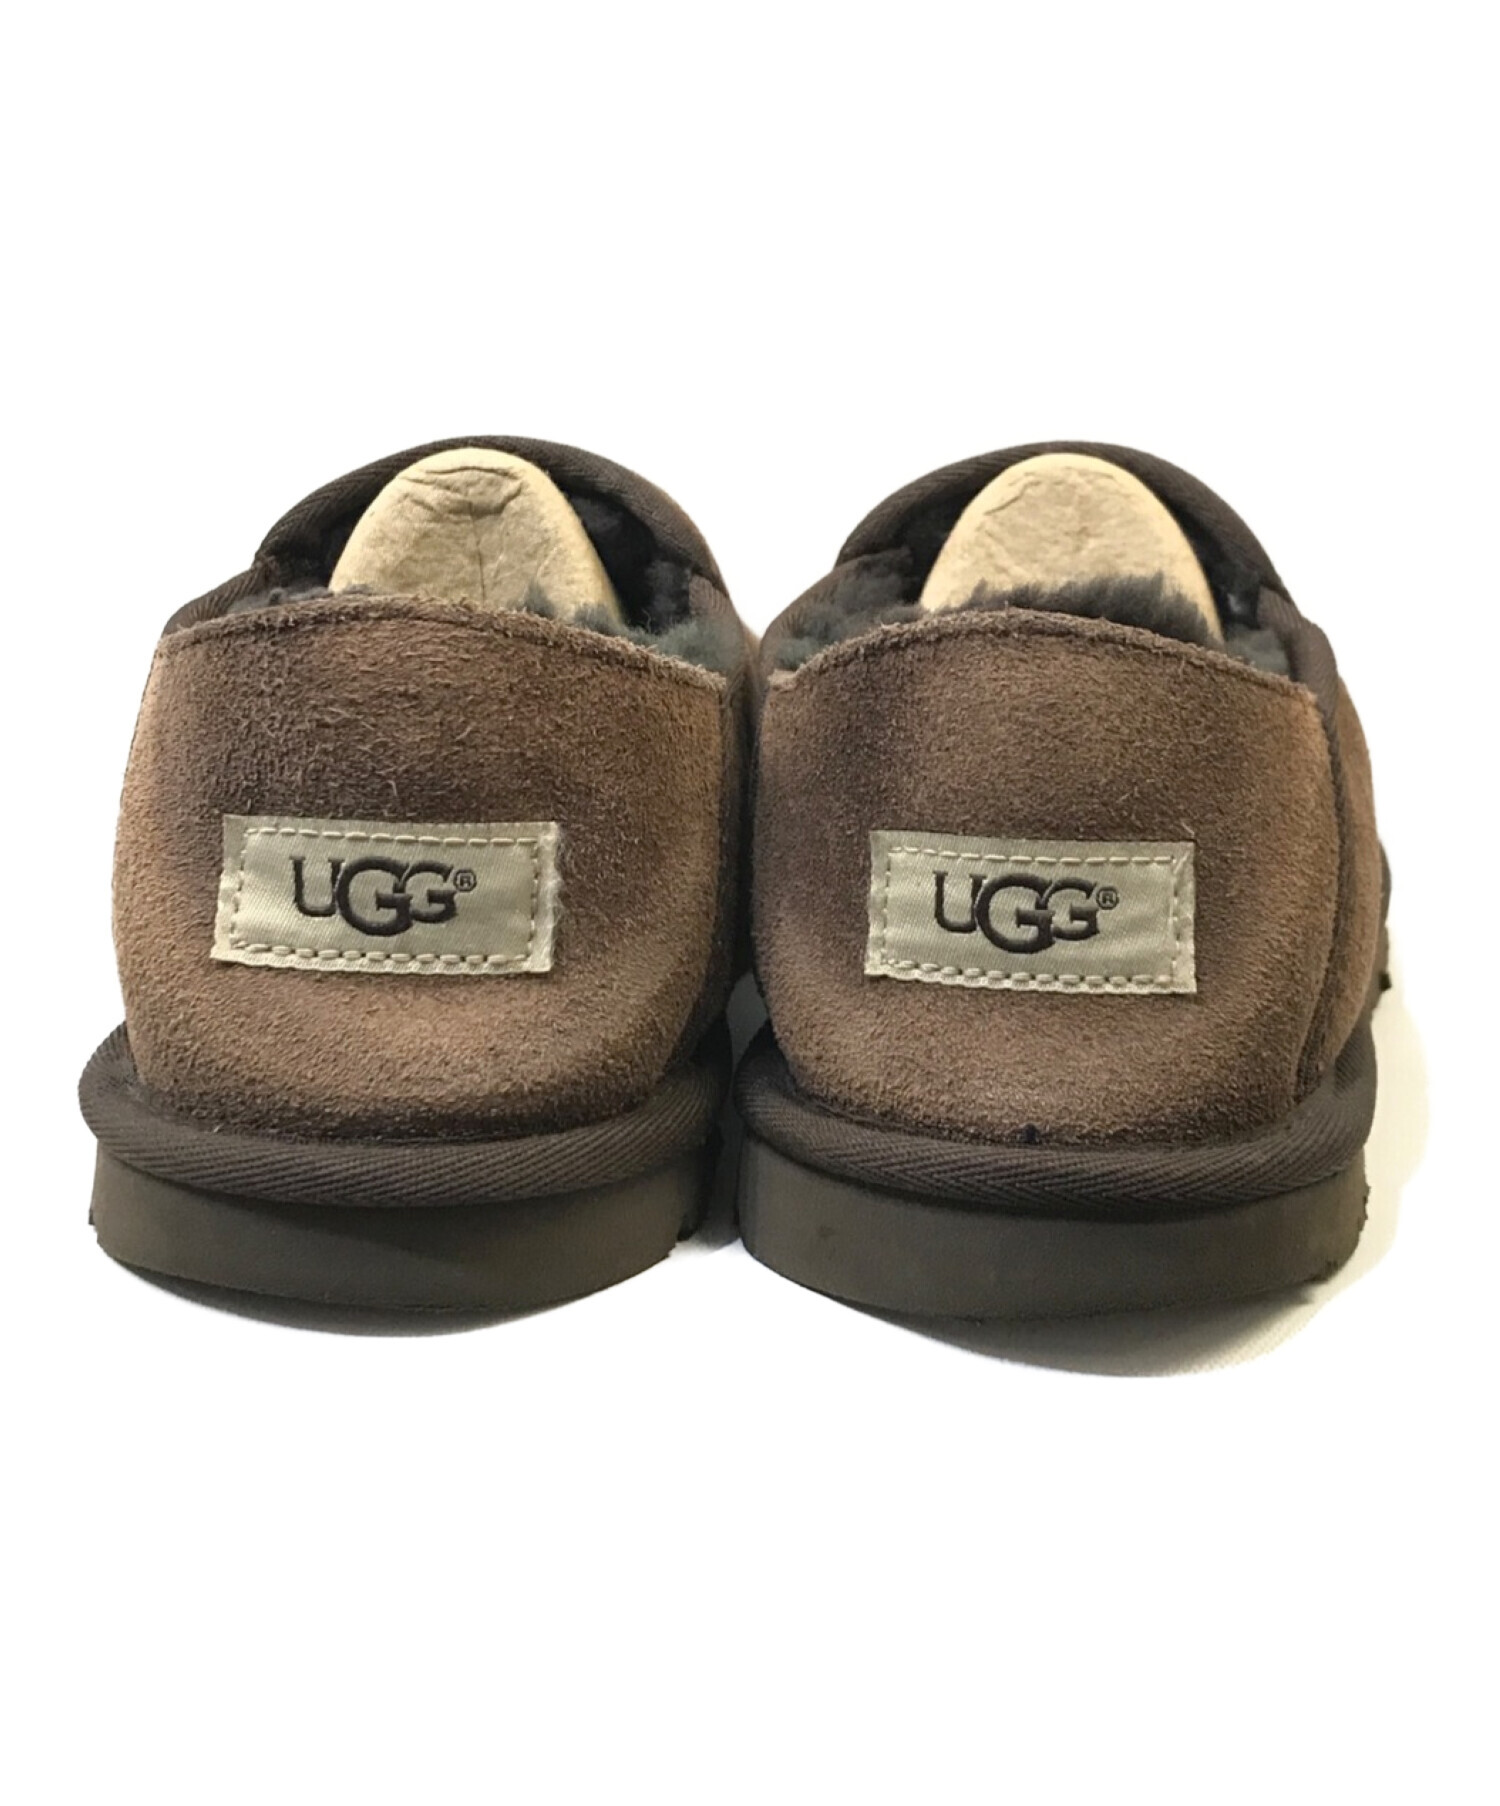 未使用に近い UGG サイズ27cm - 靴